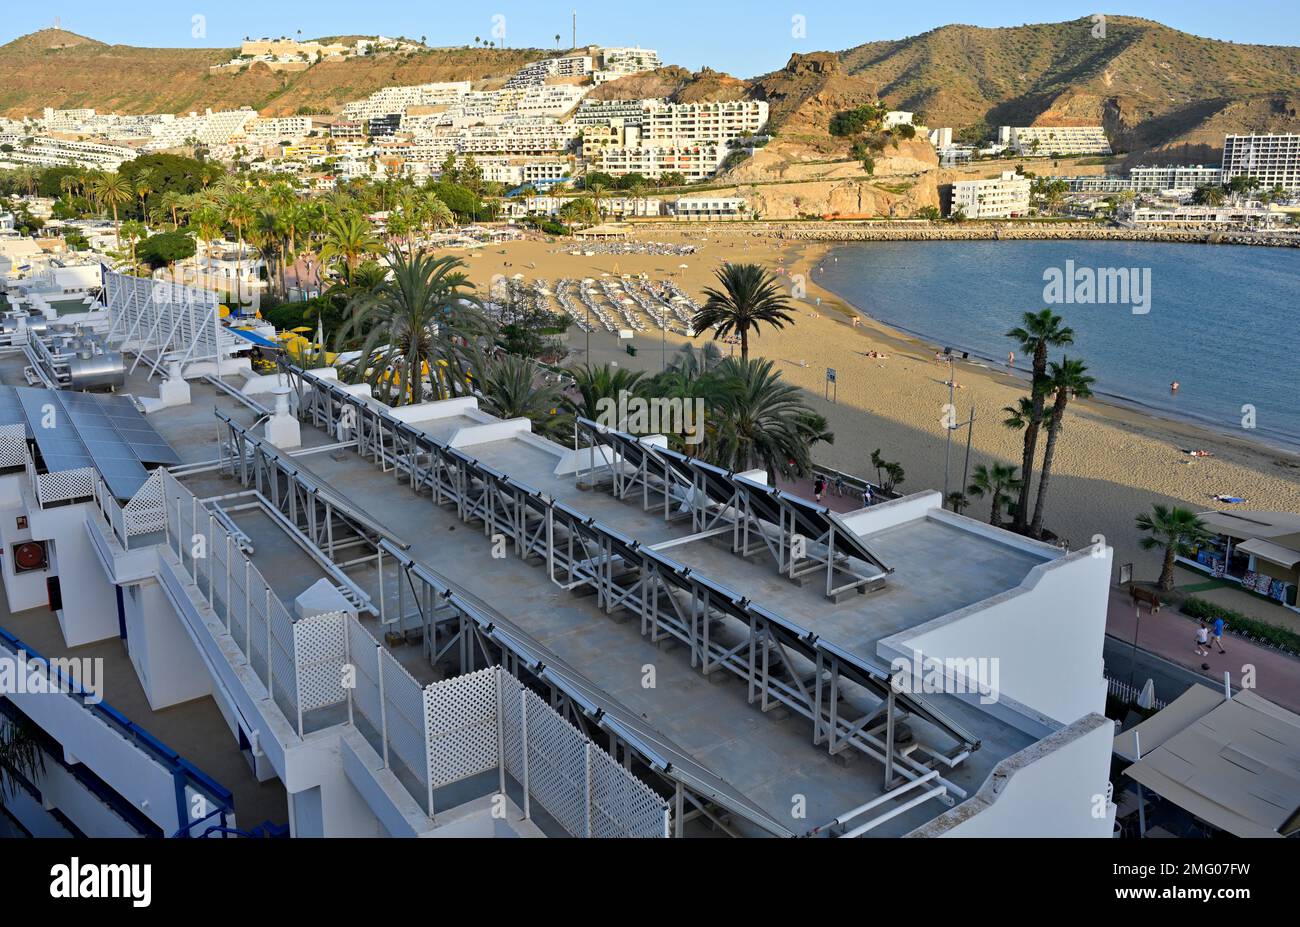 Pannelli solari termici sul tetto dell'hotel che si affaccia sulla spiaggia sabbiosa di Playa de Puerto Rico e sul lungomare, Arguineguín, Gran Canaria Foto Stock